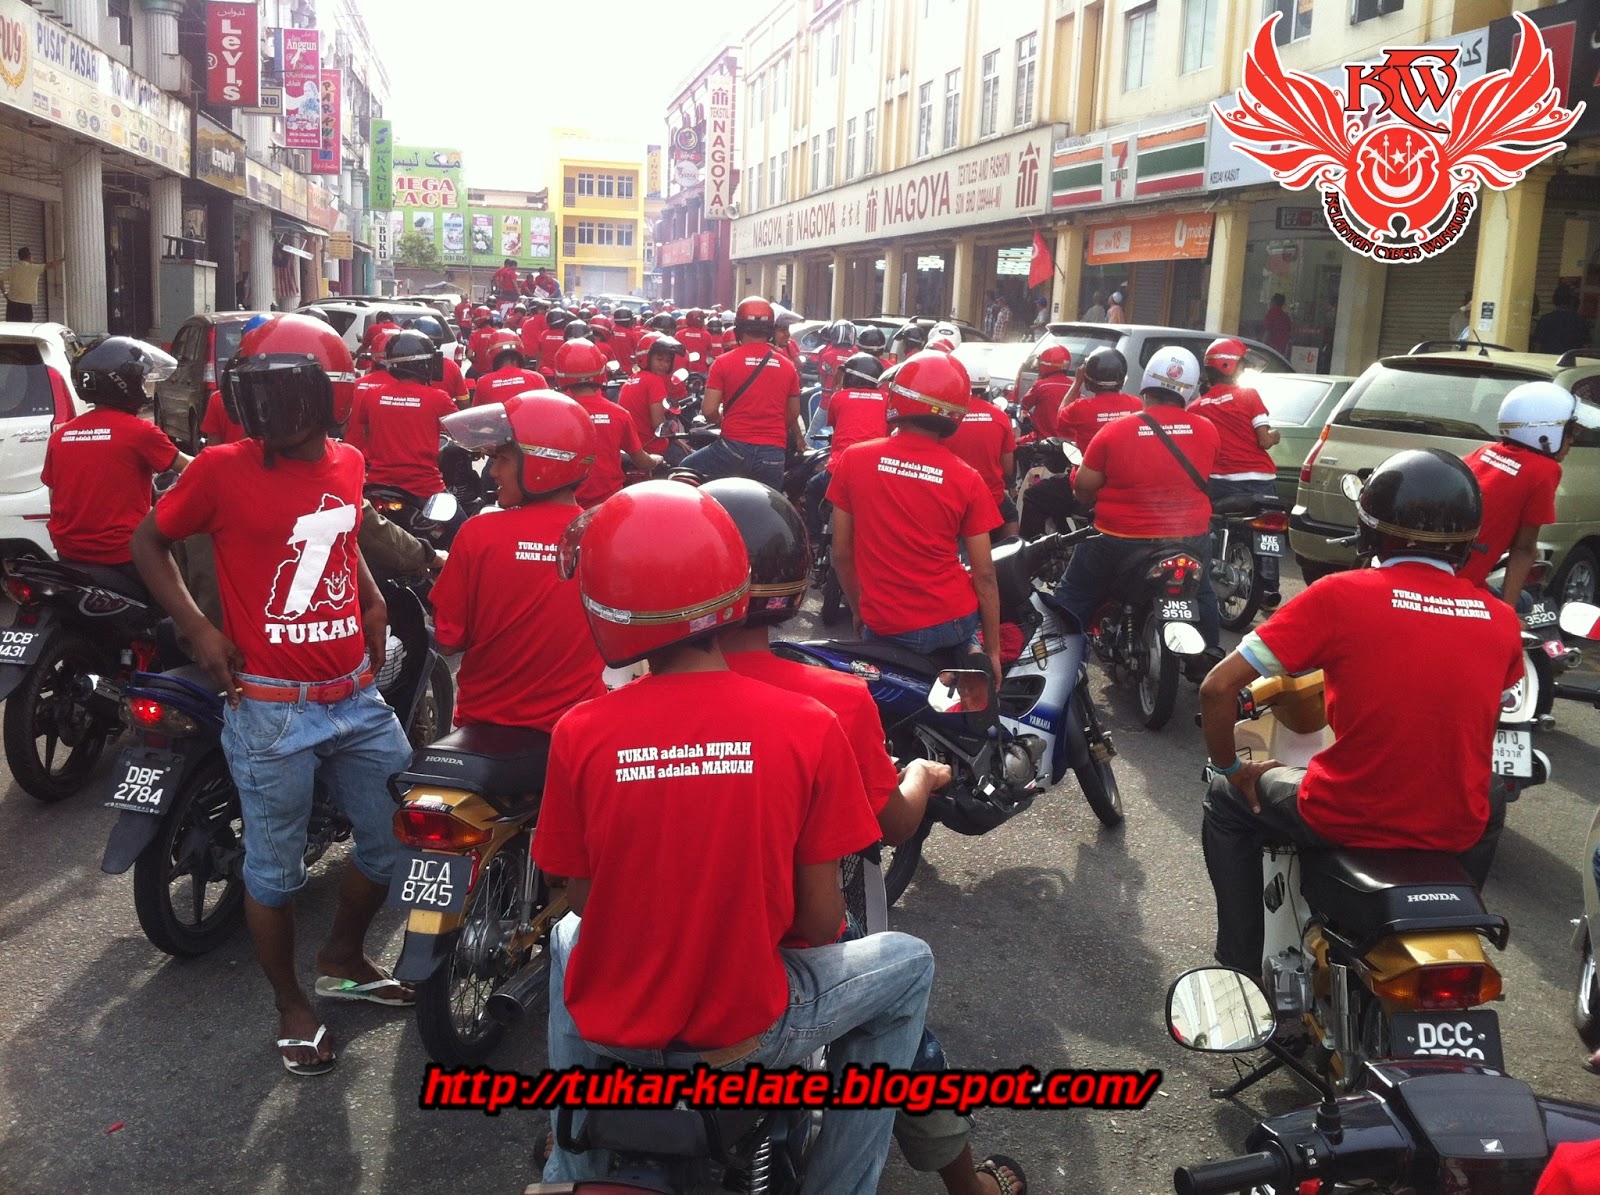 TUKAR KELATE!: #SKT2013 : Lebih 2000 berbaju merah serang 